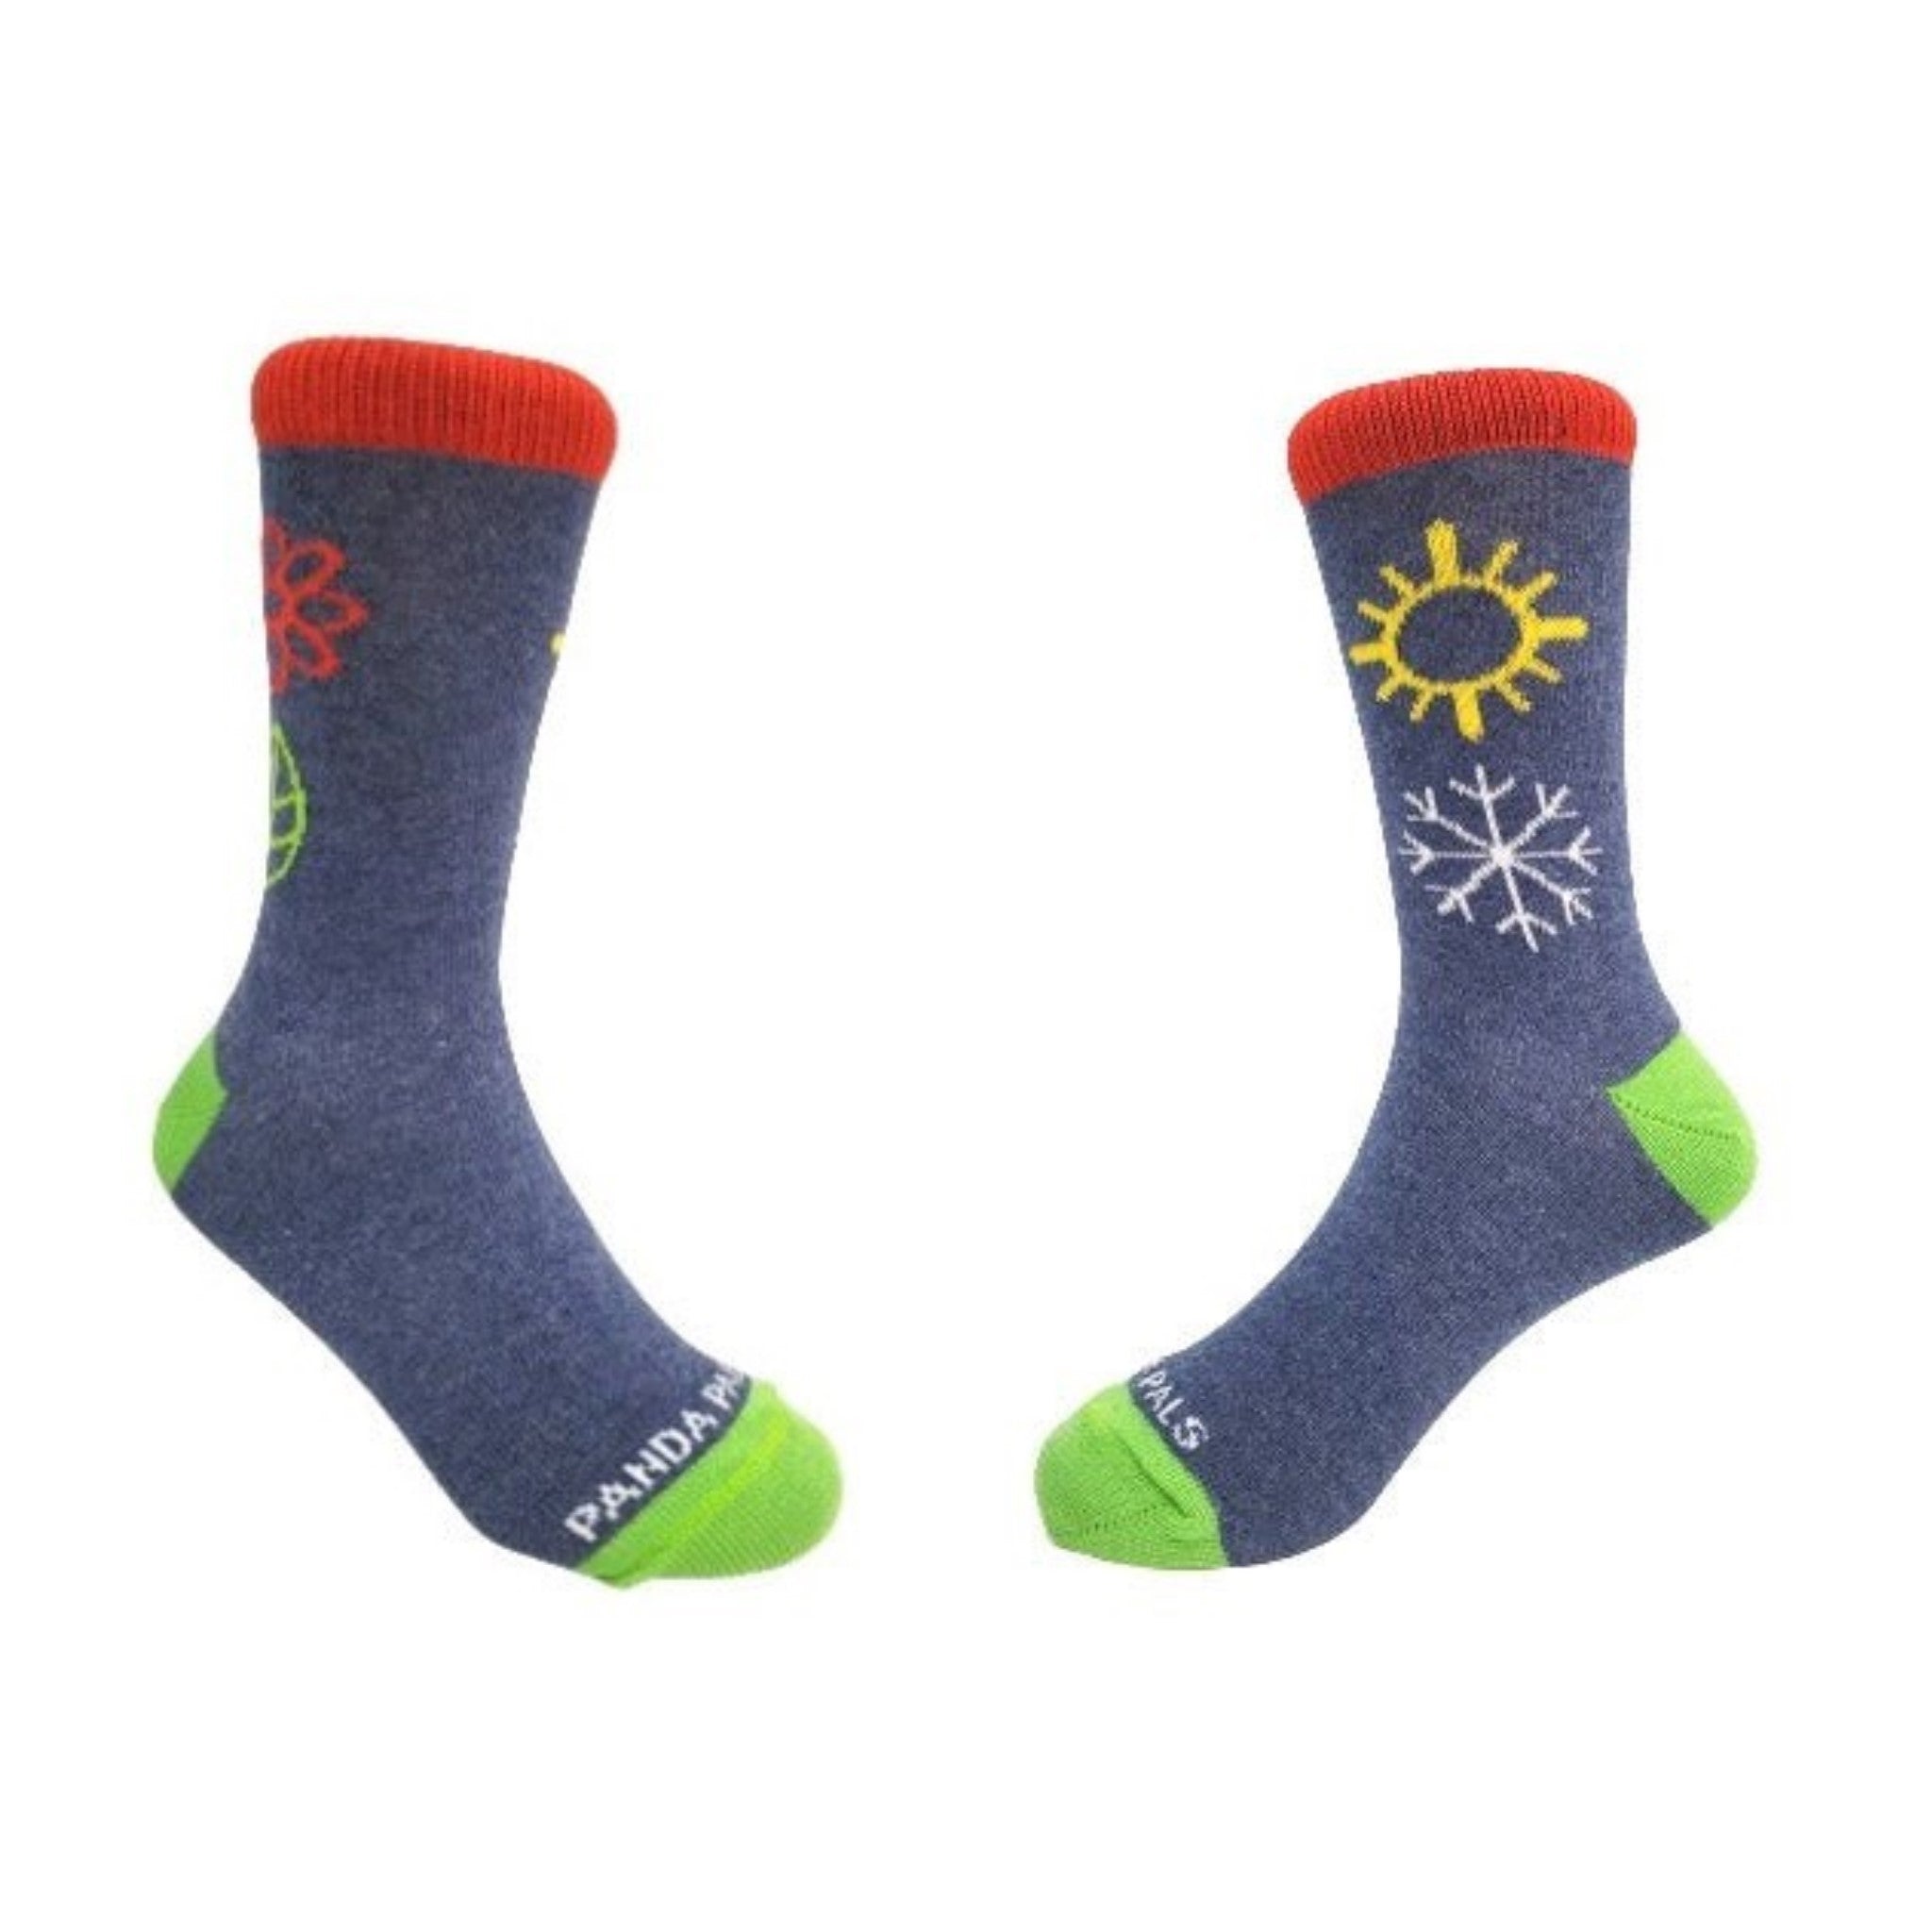 Winter Blossom Kids Socks (Ages 3-7) - Denim or Light Blue